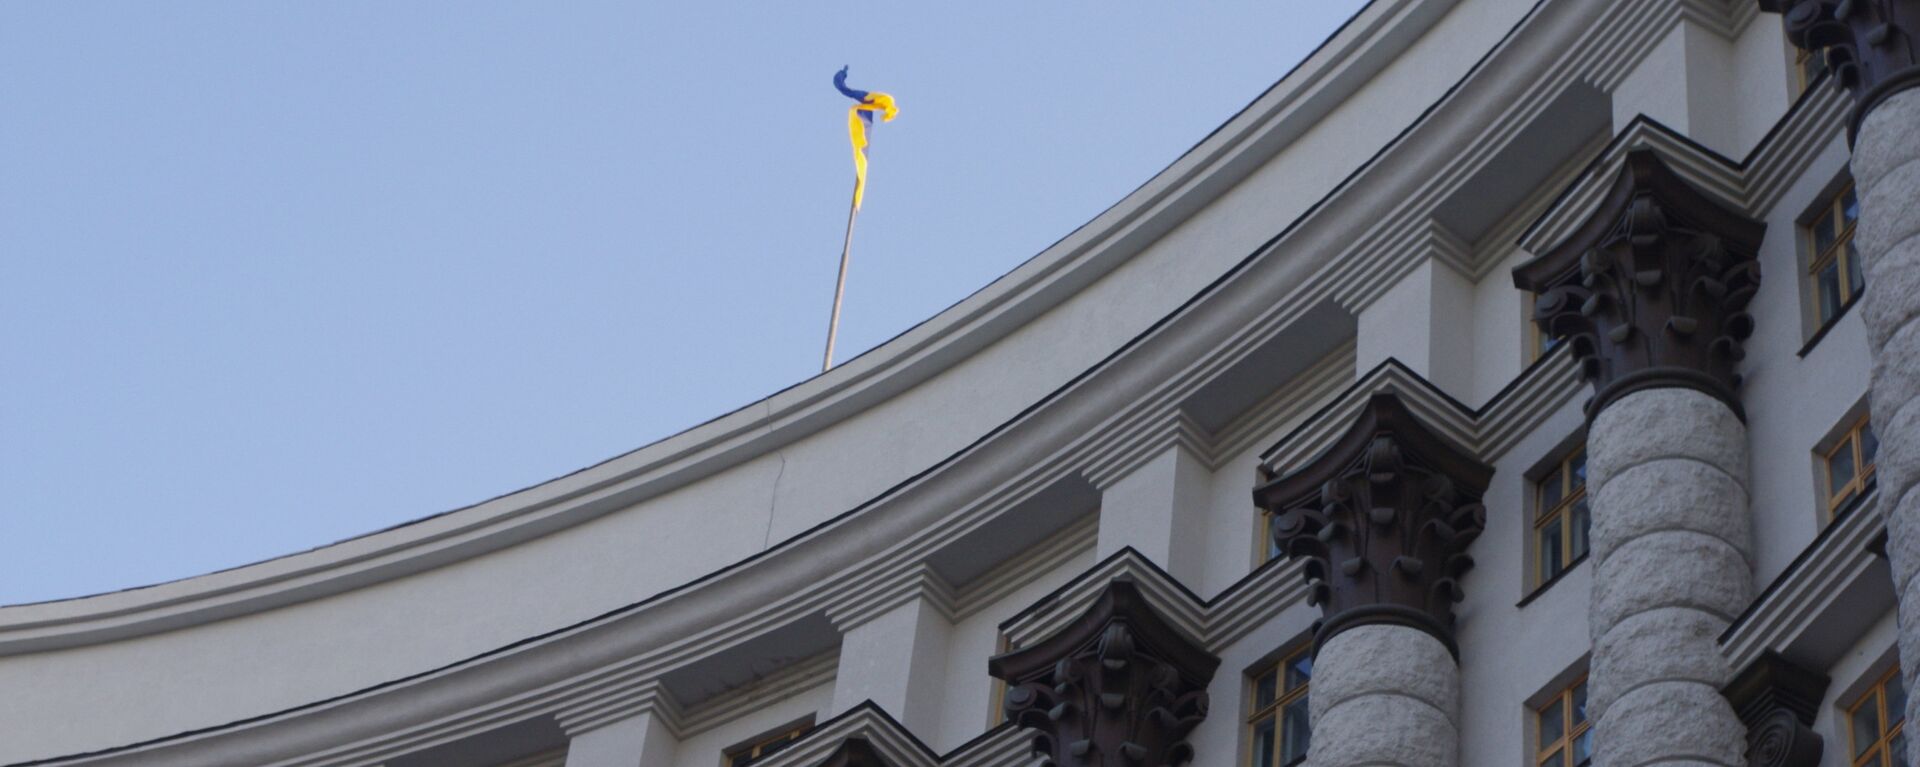 Дома правительства Украины в Киеве - Sputnik Latvija, 1920, 26.08.2021